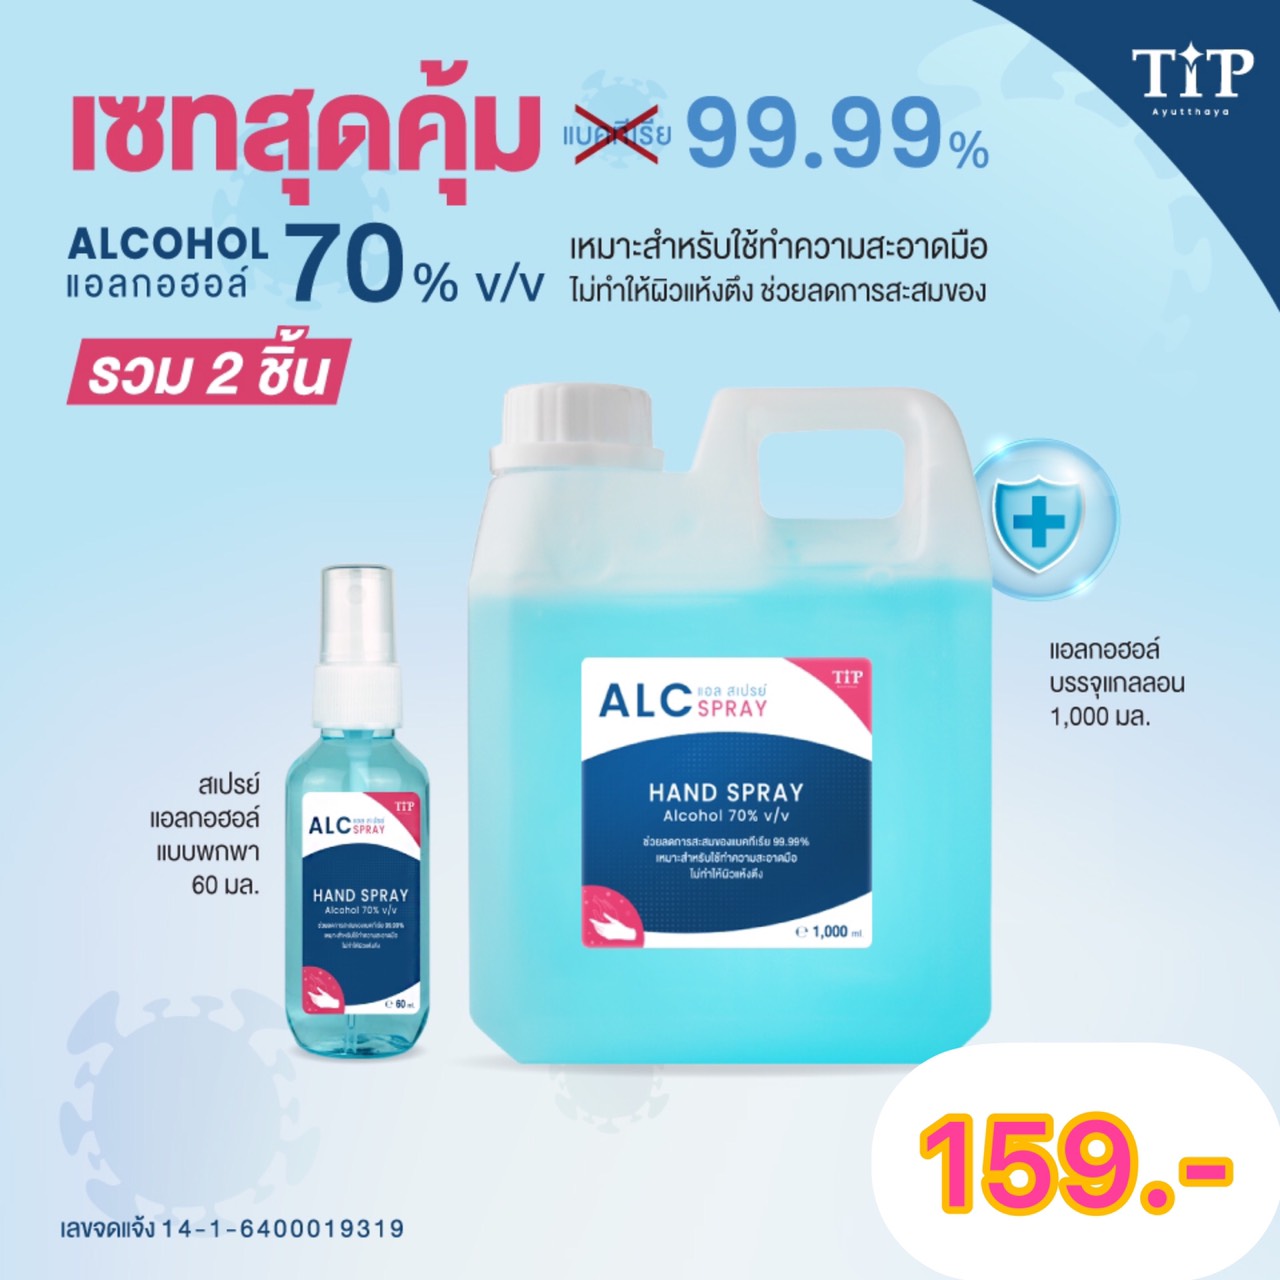 แอลกอฮอล์ 70% ชนิดน้ำ เซทสุดคุ้ม ALC Tip Product คุณภาพสูง กลิ่นหอมถนอมมือ ไม่ฉุน (รวมสองชิ้น)